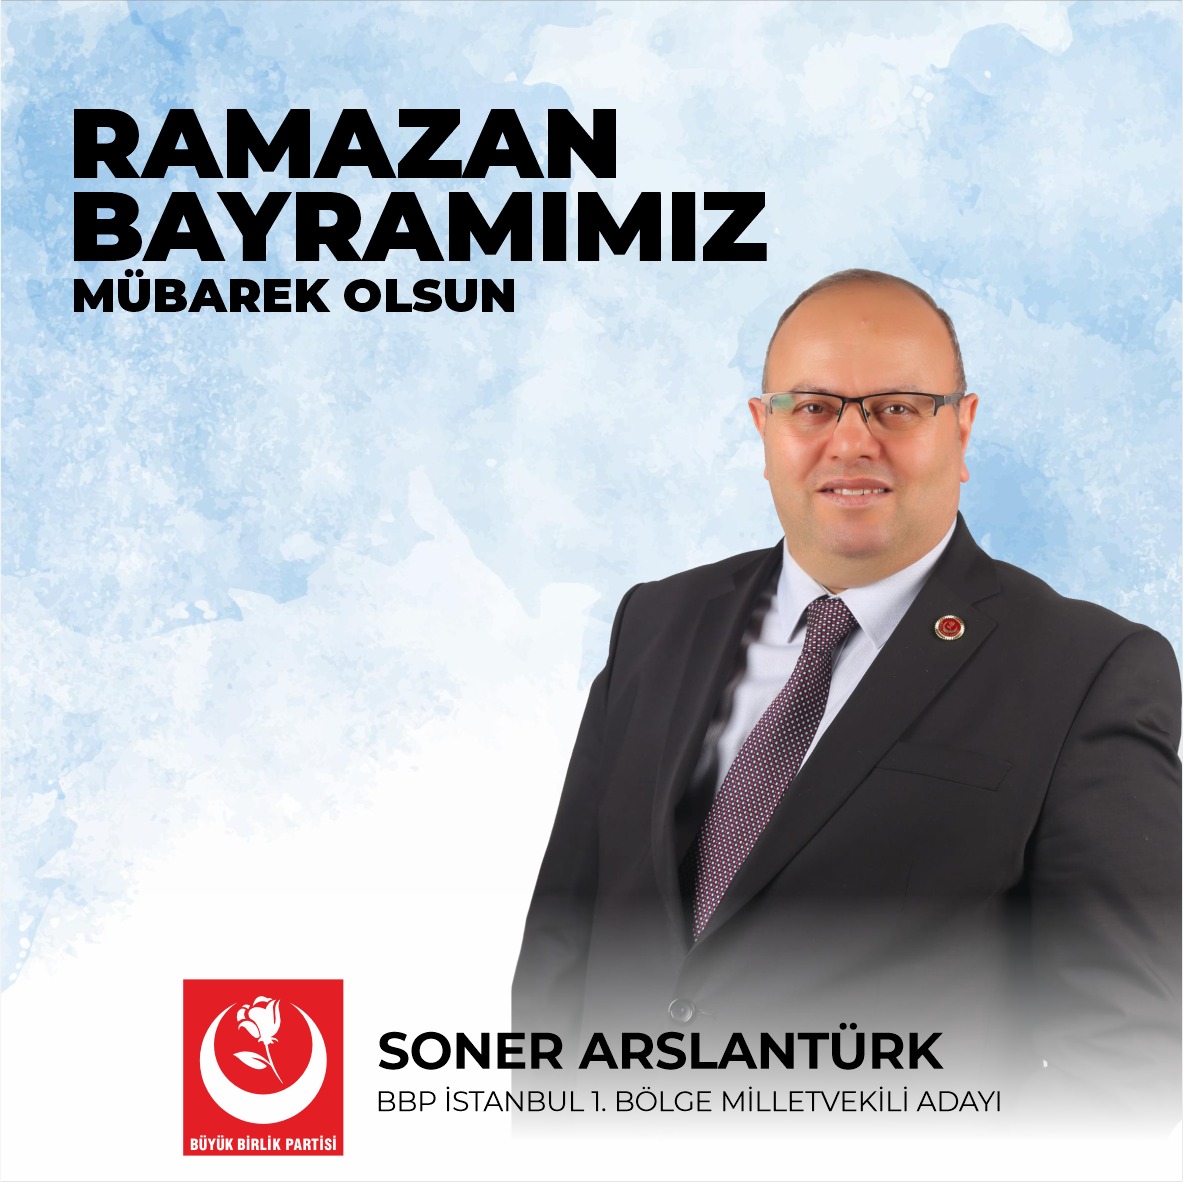 BBP İstanbul 1.Bölge Milletvekili Adayı Soner Aslantürk ‘ten Bayram Mesajı;